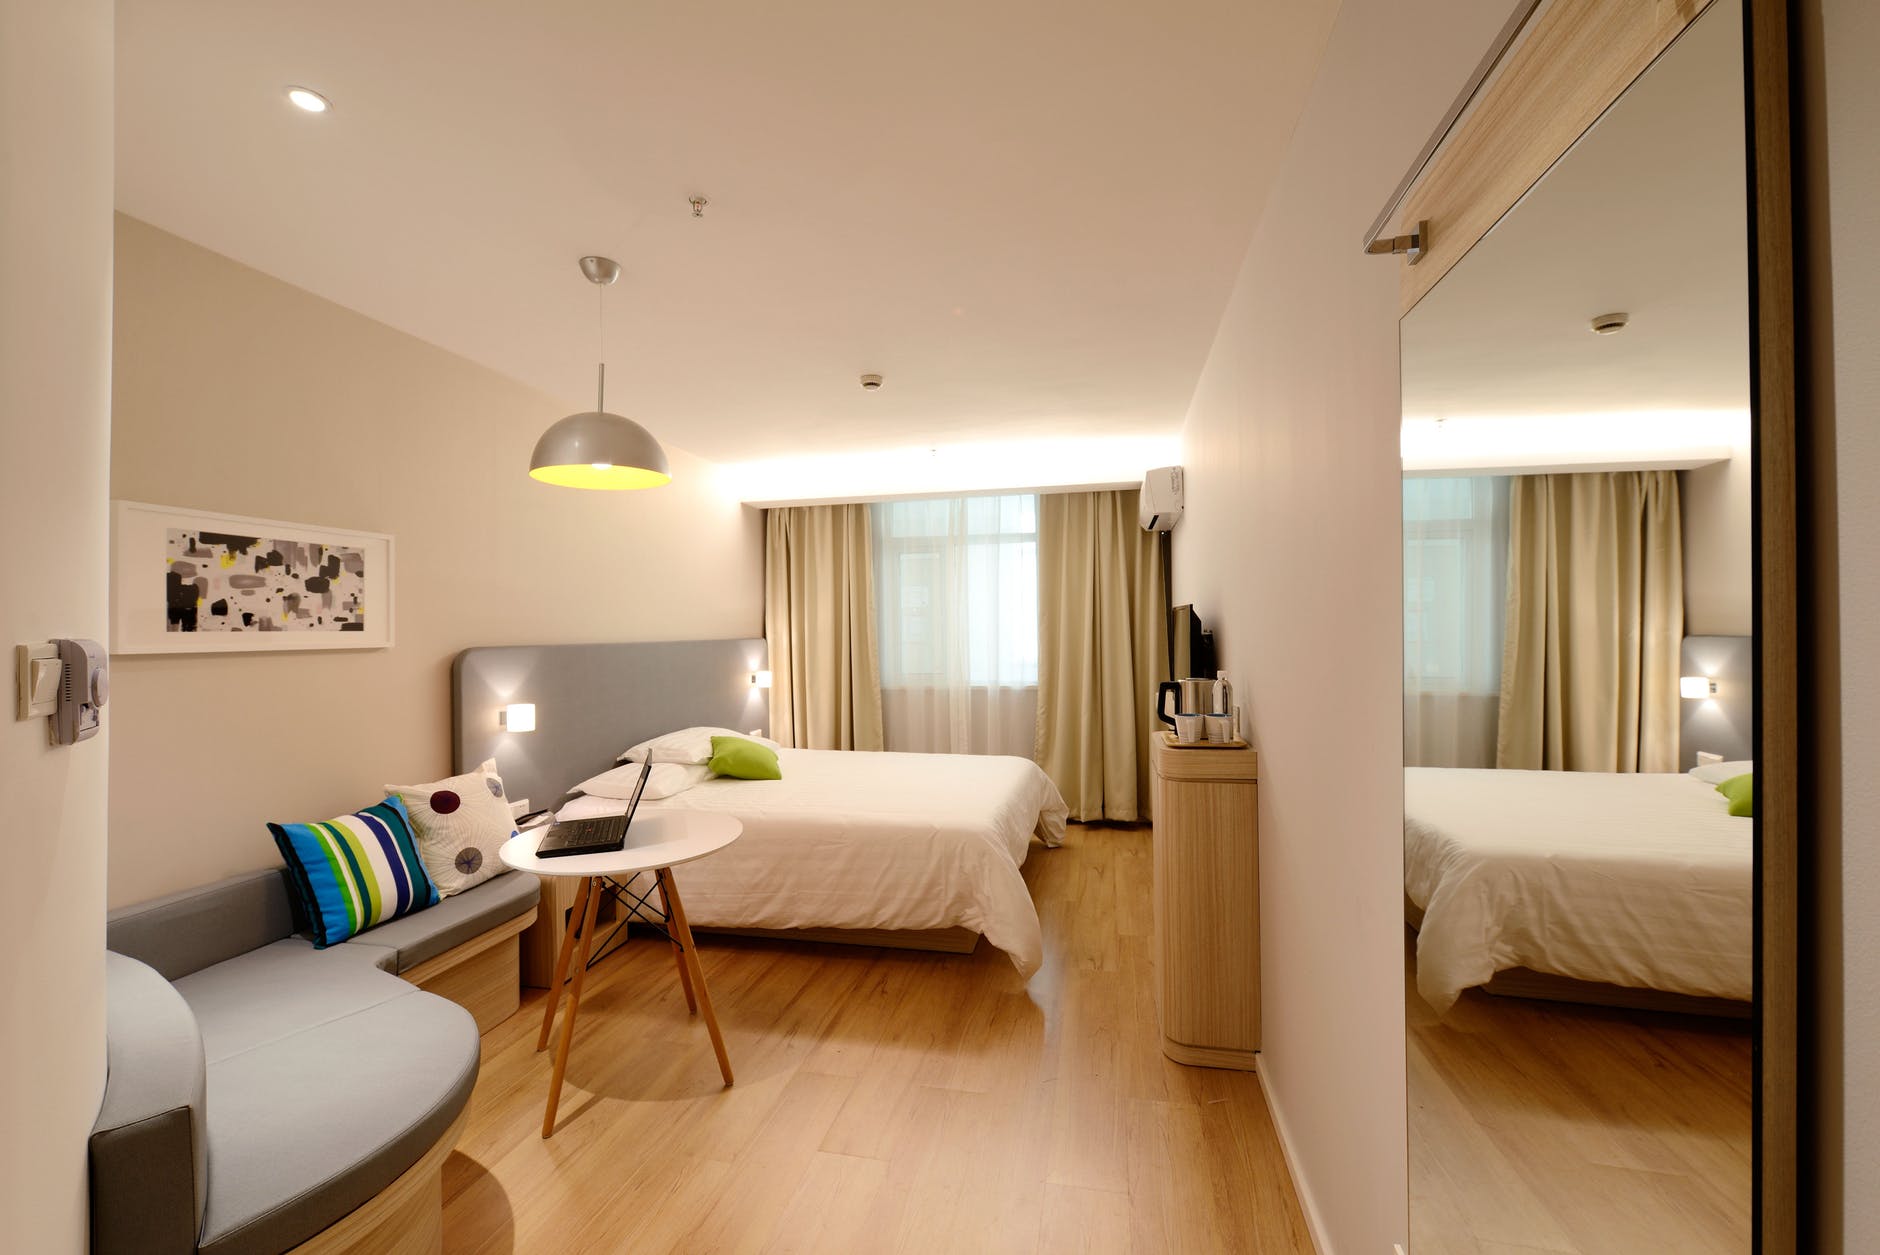 Dormitorio moderno con tarima flotante